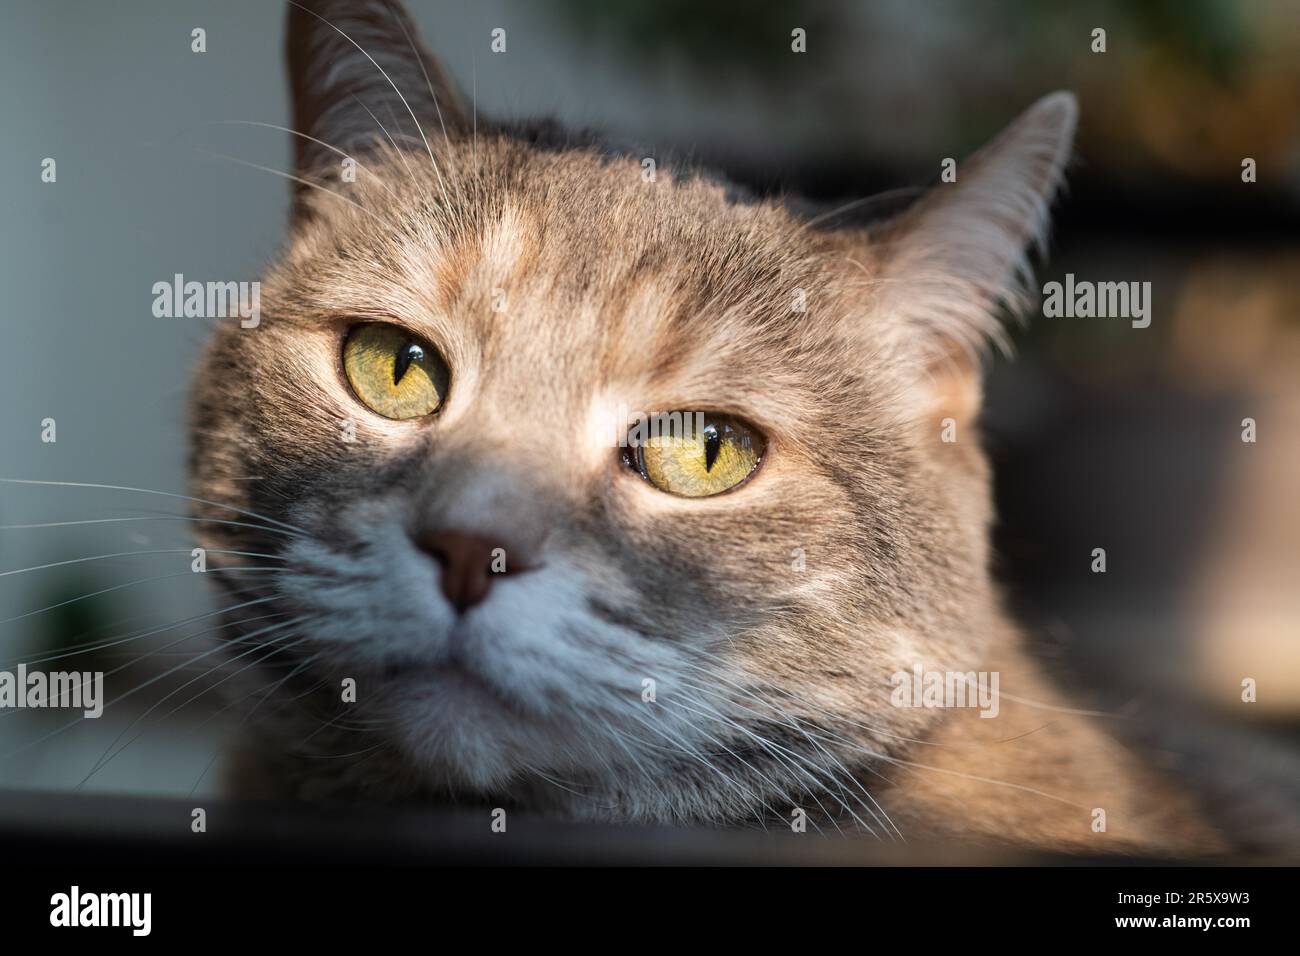 Gros plan photo d'un petit-air domestique gris dilue tabby torbie maison chat avec de longs whiskers et les yeux verts regardant l'appareil photo Banque D'Images